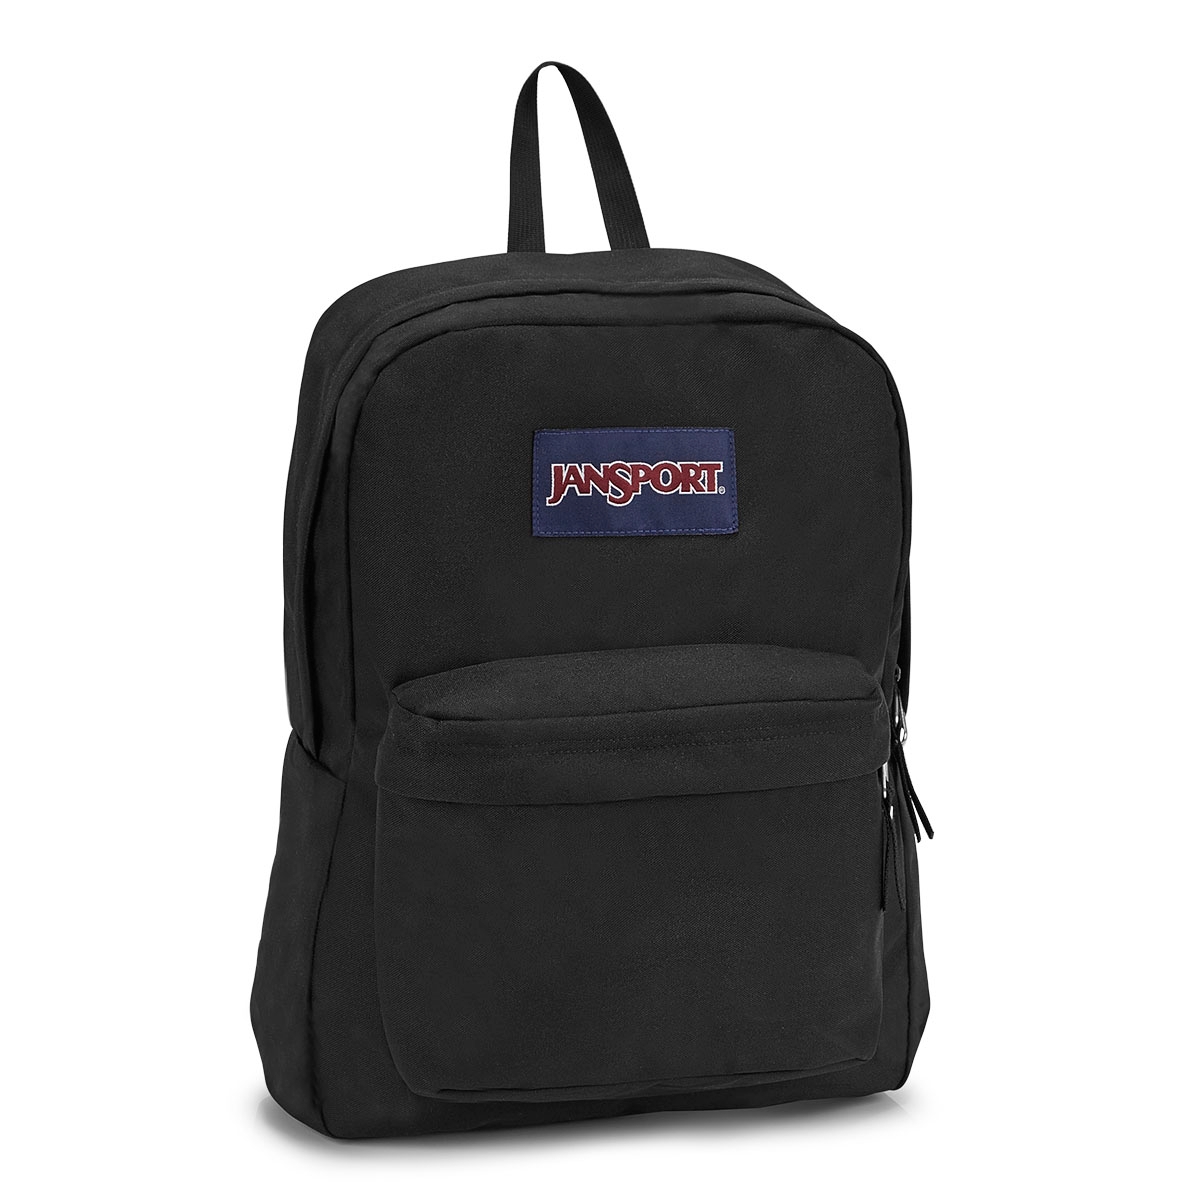 JanSport Unisex SUPERBREAK black backpack | Softmoc.com